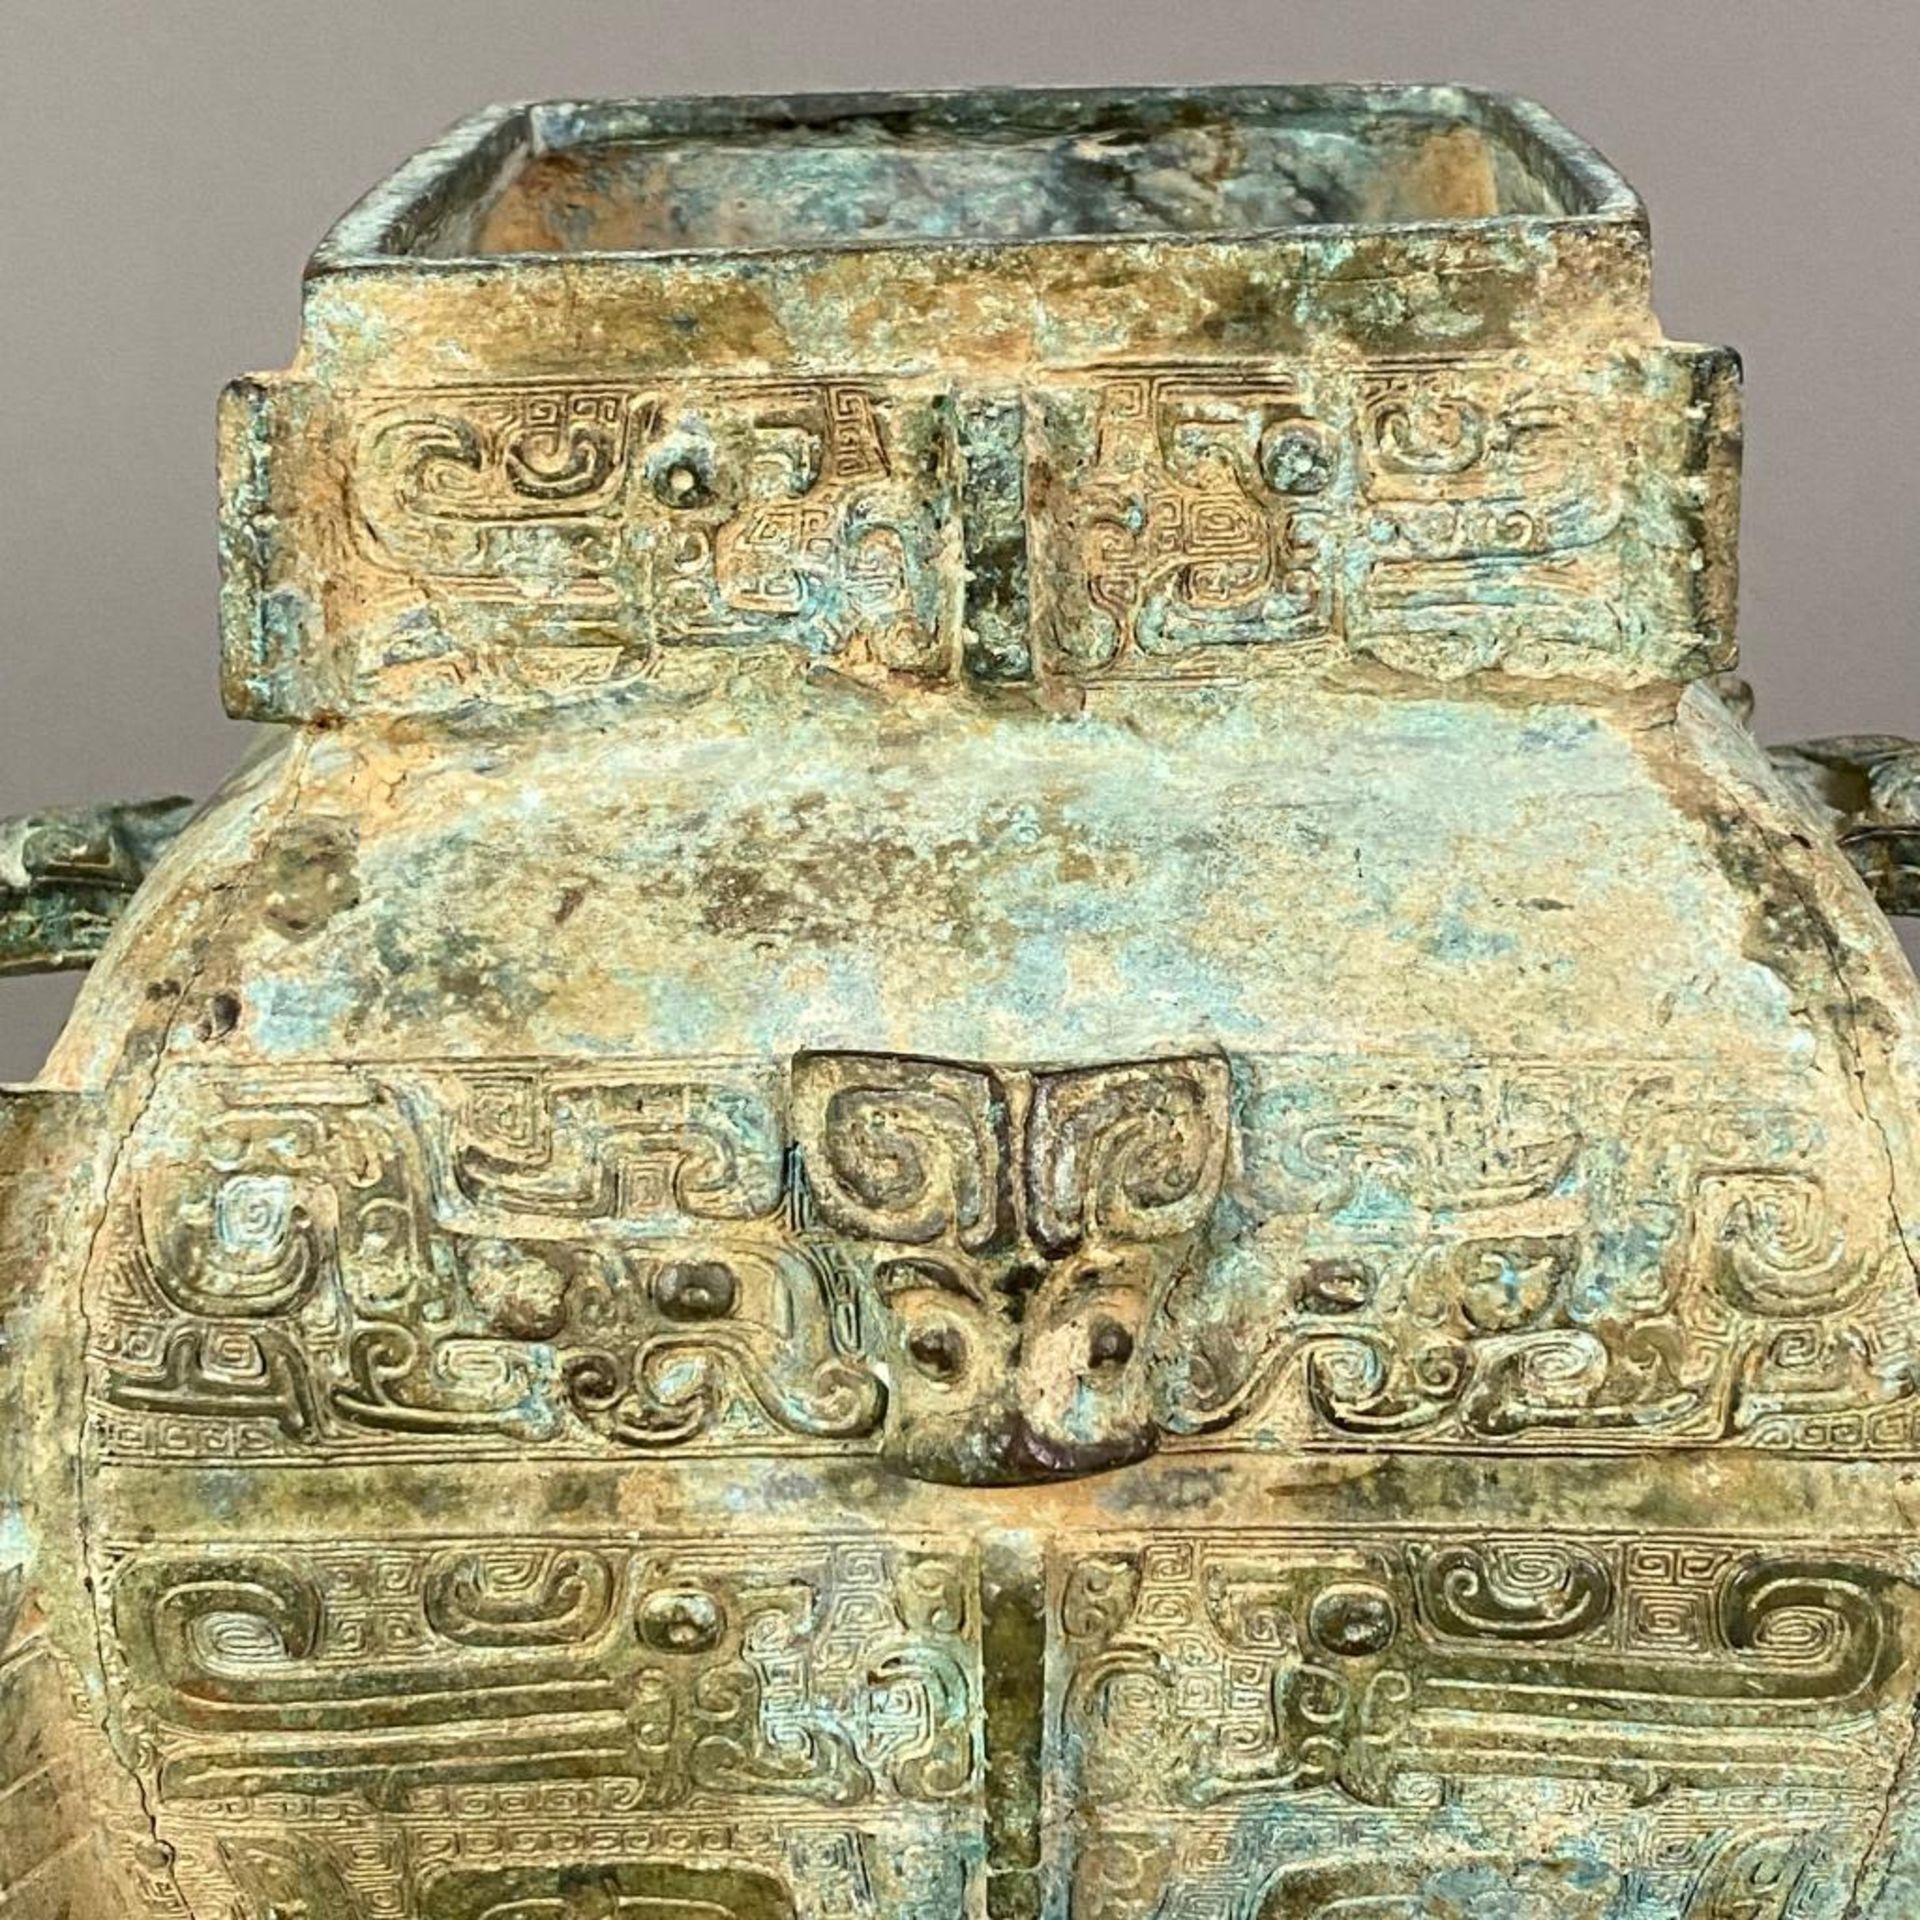 Fanghu-Vase im archaischen Stil - China, grün-braun patinierte Bronze, vierkantige gebauchte Form a - Image 4 of 10